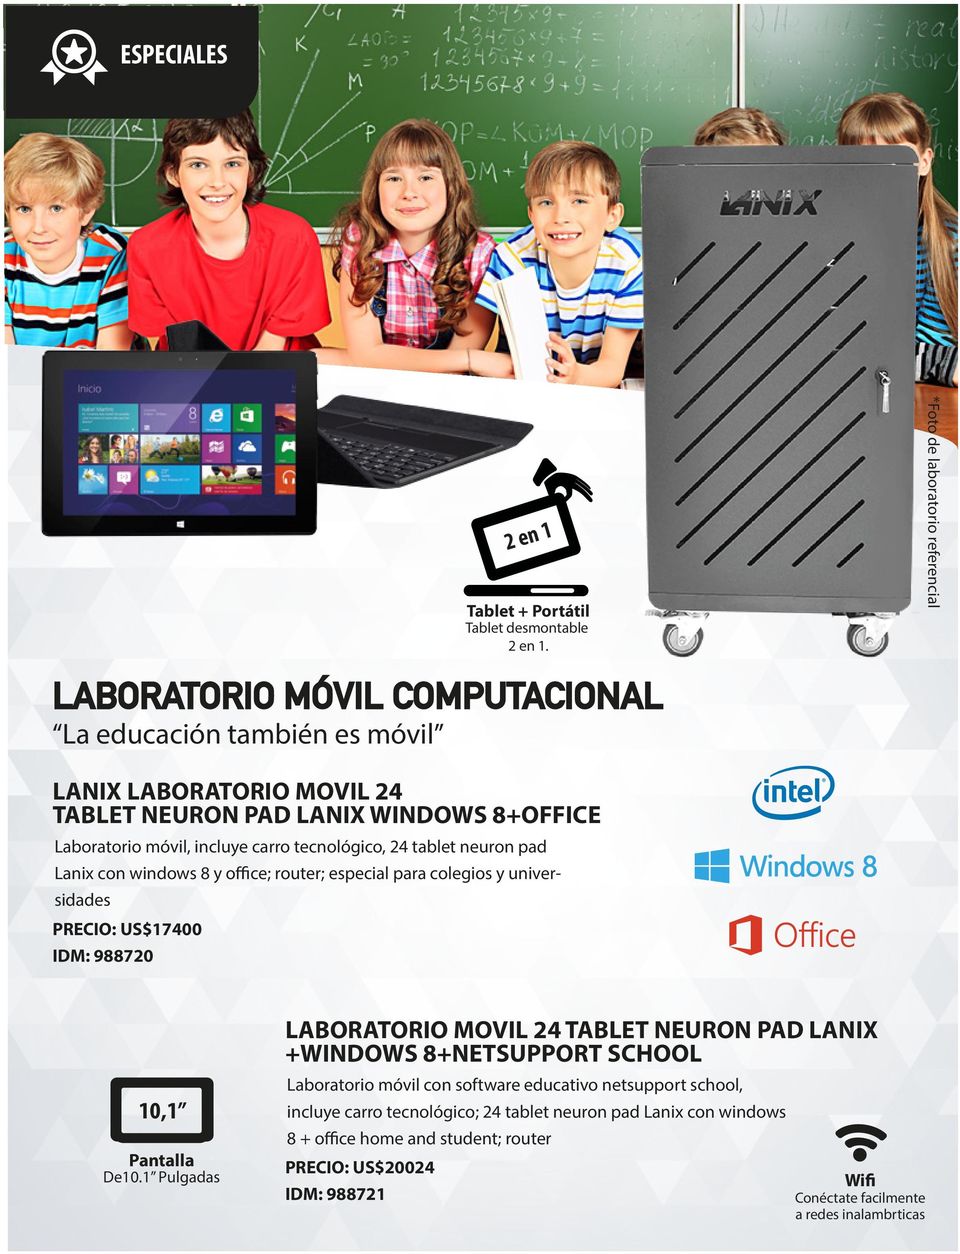 incluye carro tecnológico, 24 tablet neuron pad Lanix con windows 8 y office; router; especial para colegios y universidades PRECIO: US$17400 IDM: 988720 10,1 Pantalla De10.